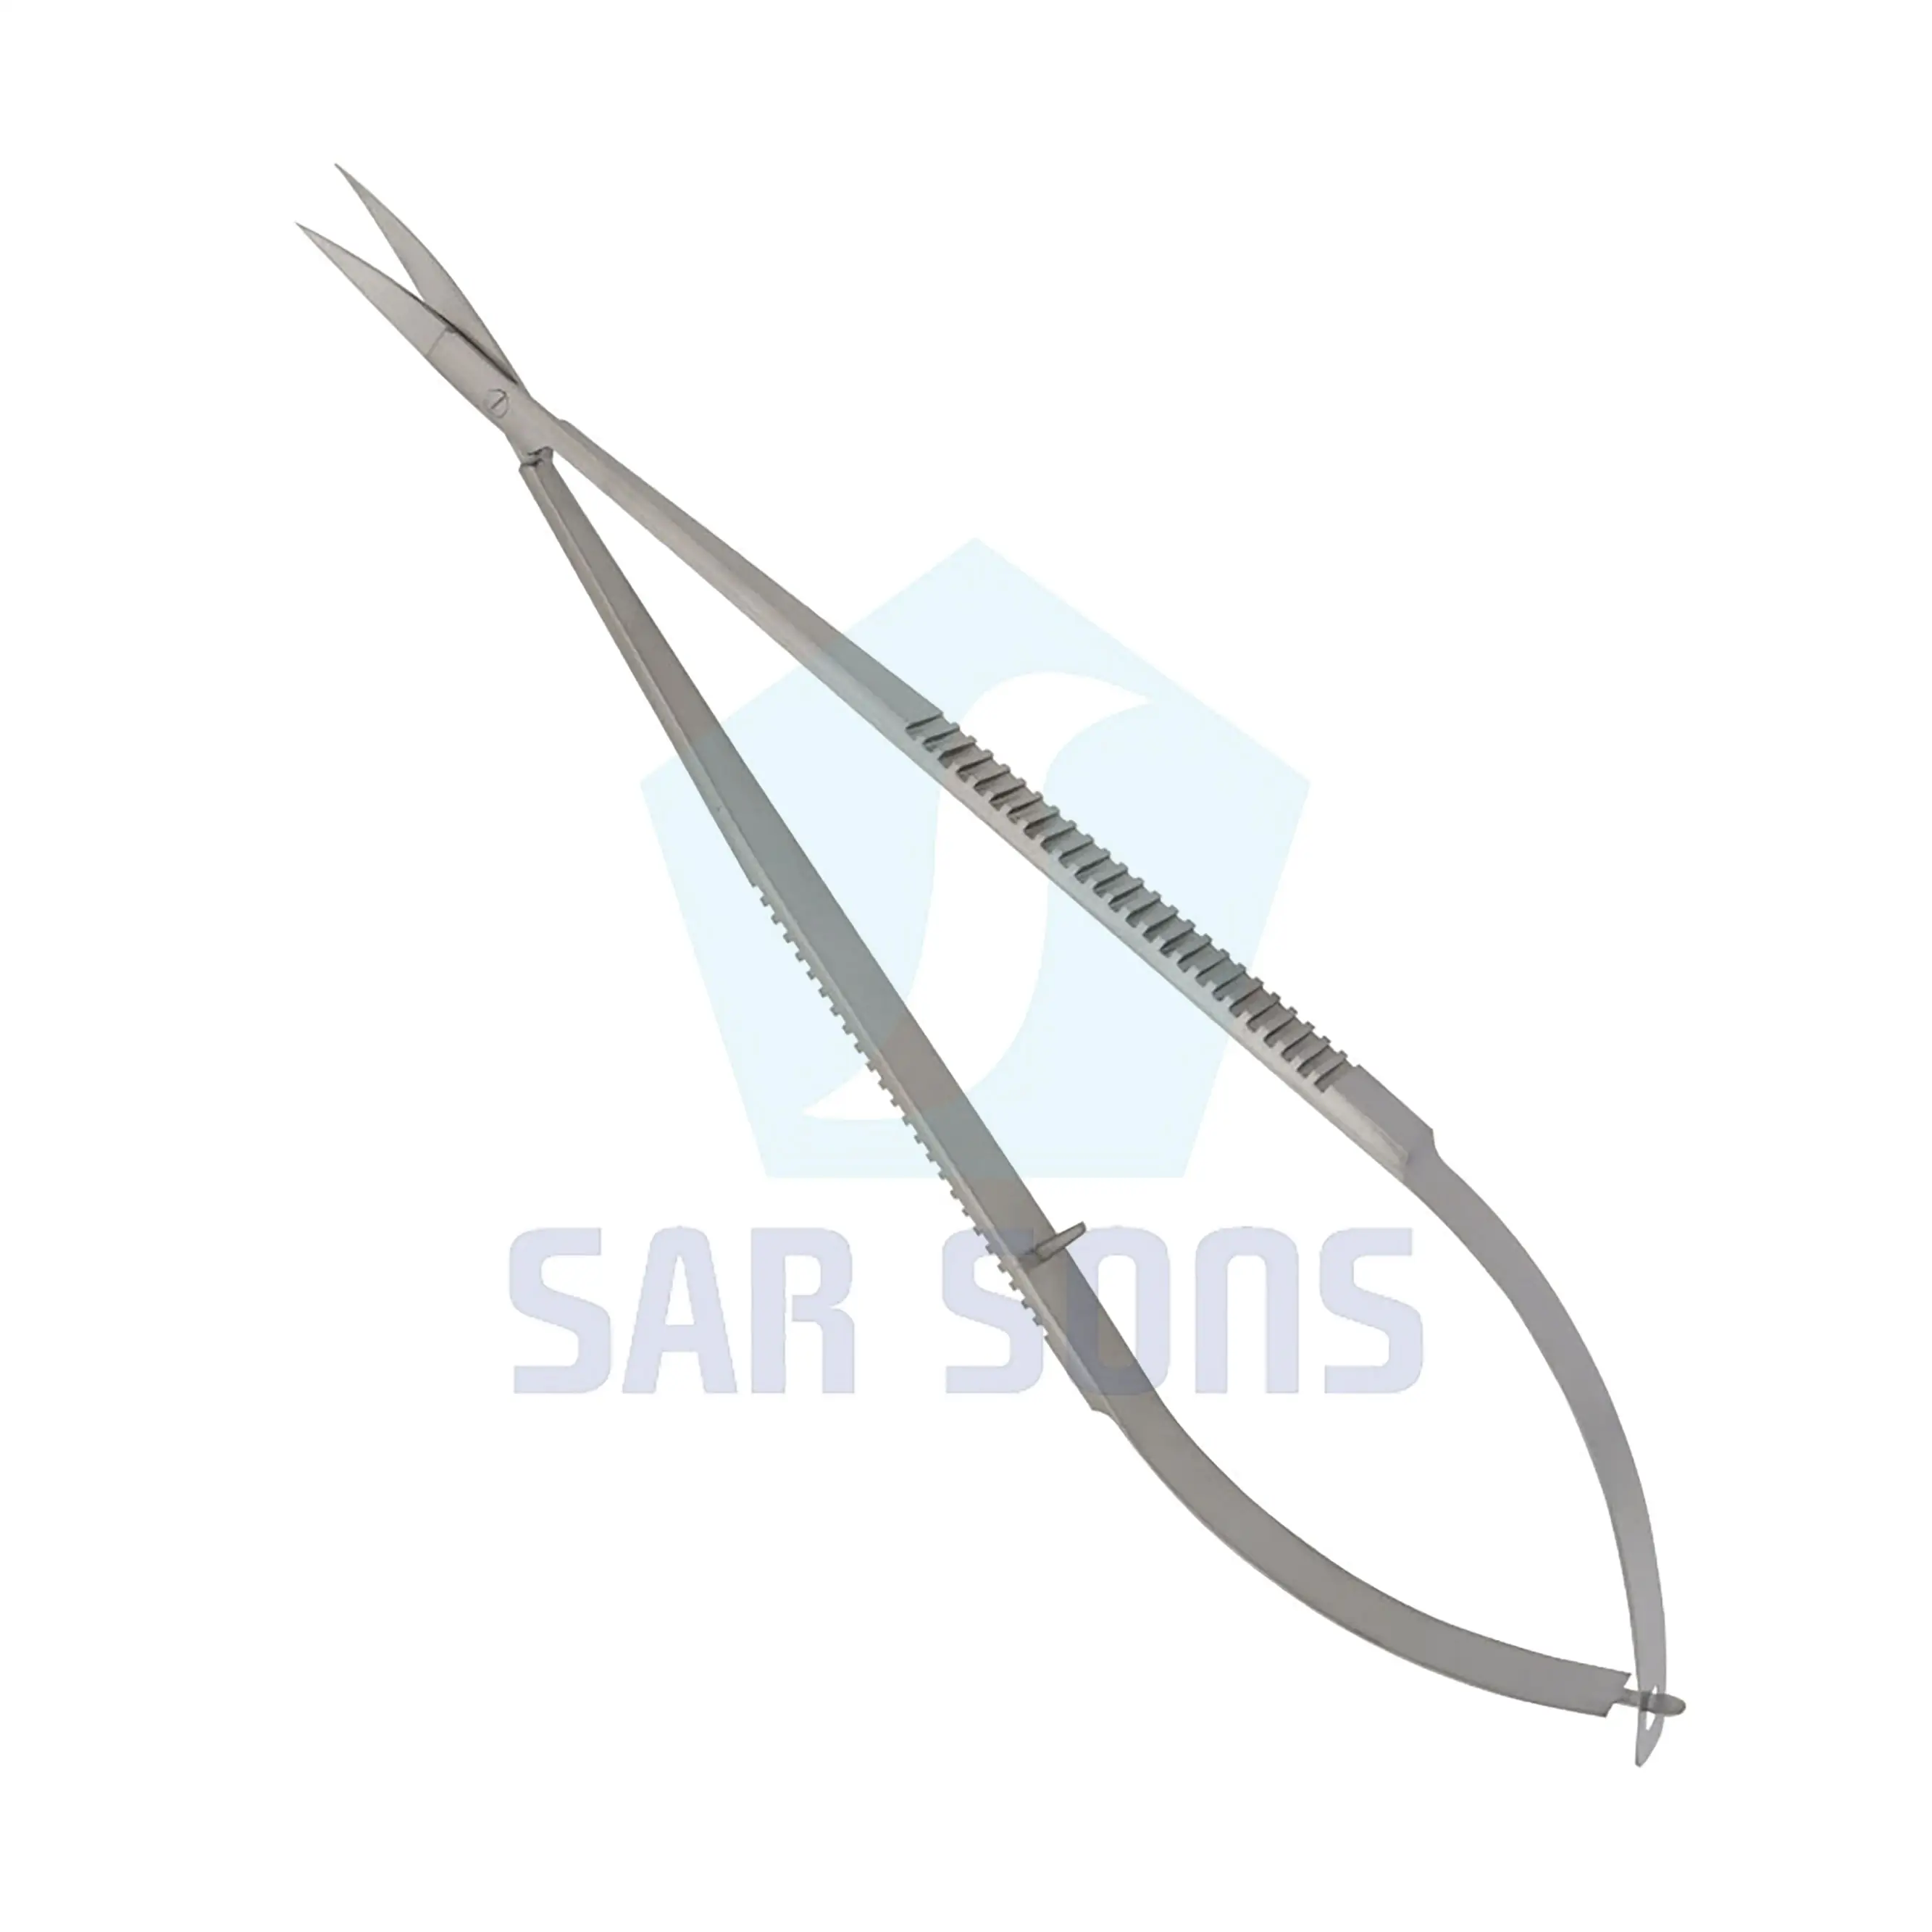 Castroviejo Micro forbici 180 mm curvo strumenti chirurgici Sar Sons Sugrical